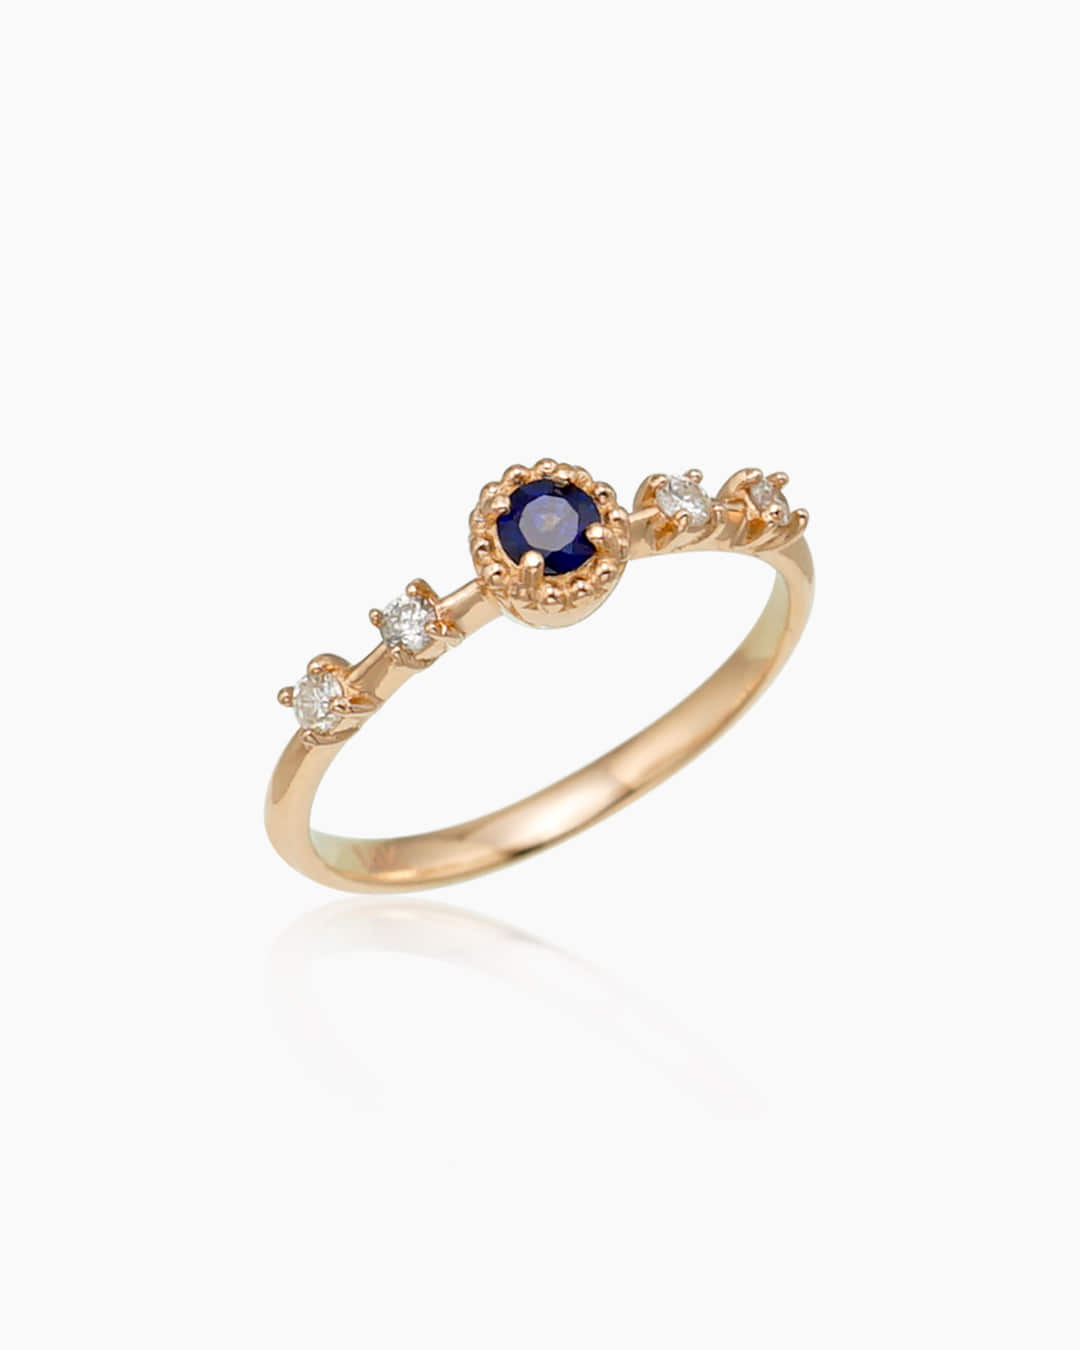 천연 블루 사파이어와 화이트 다이아몬드가 세팅된 반지이다.